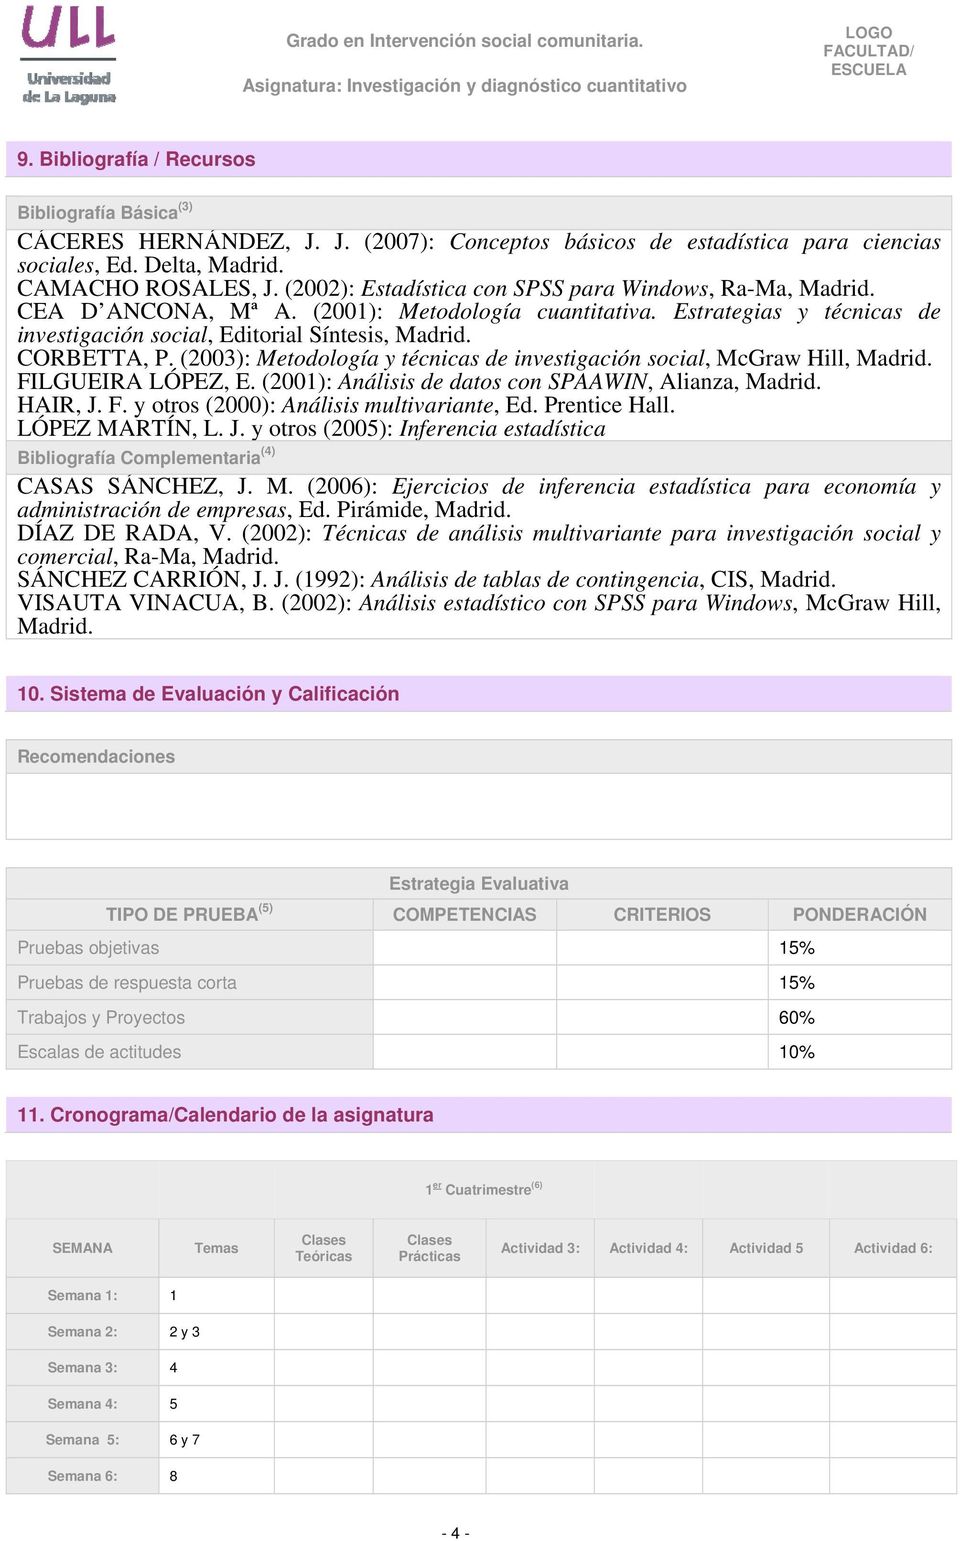 (2003): Metodología y técnicas de investigación social, McGraw Hill, Madrid. FILGUEIRA LÓPEZ, E. (2001): Análisis de datos con SPAAWIN, Alianza, Madrid. HAIR, J. F. y otros (2000): Análisis multivariante, Ed.